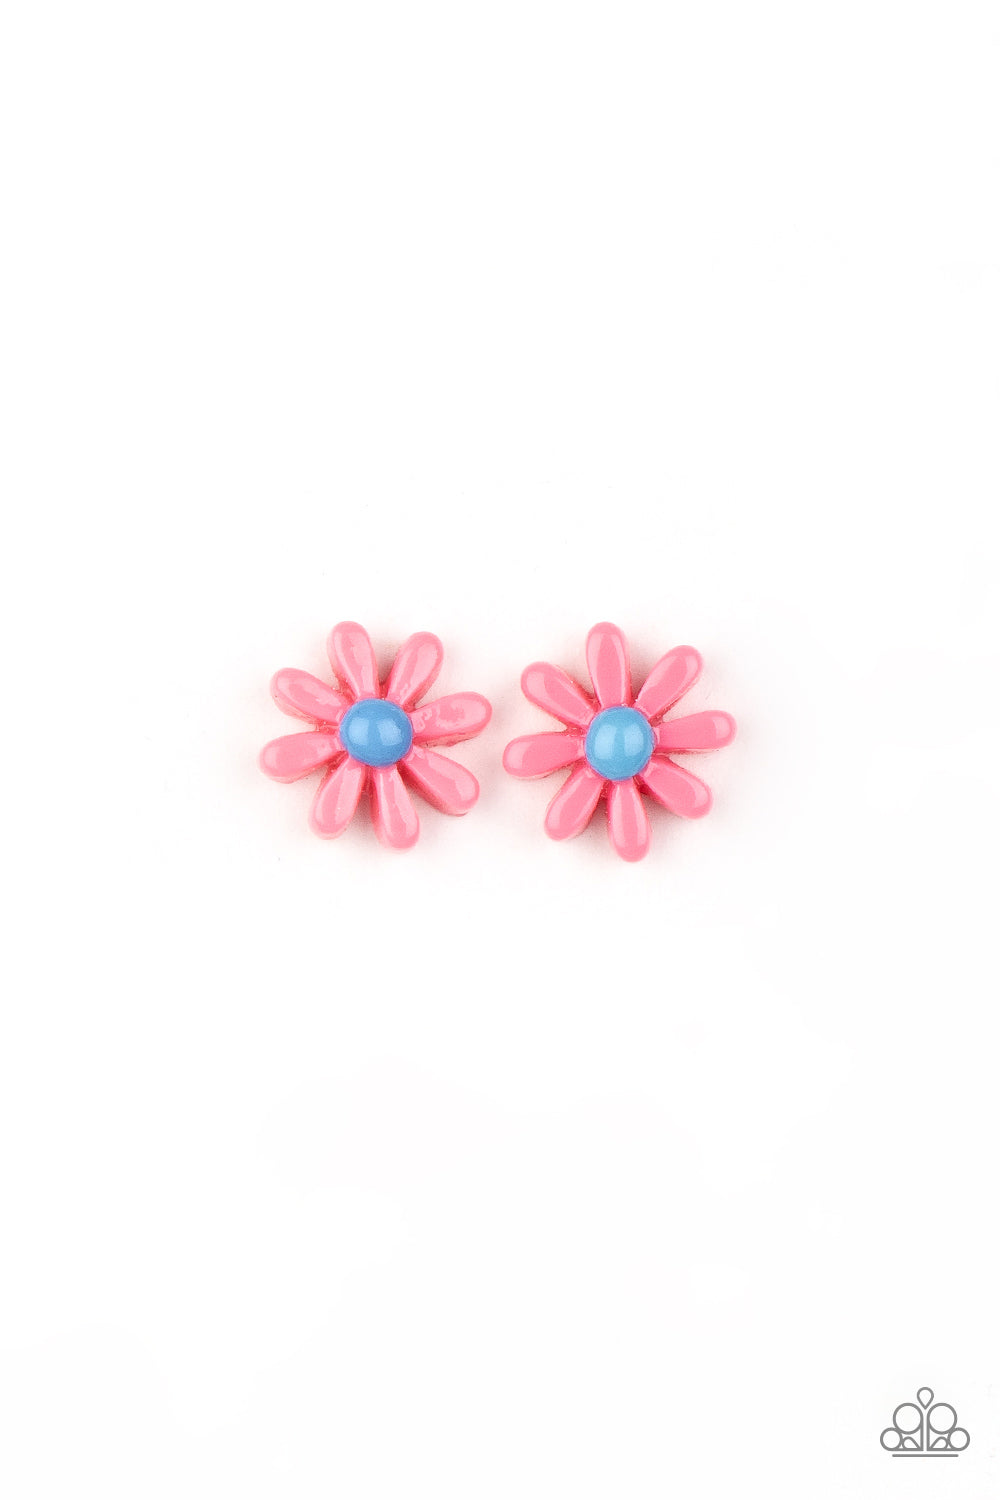 Starlet Shimmer Earrings - Floral Garden Studs